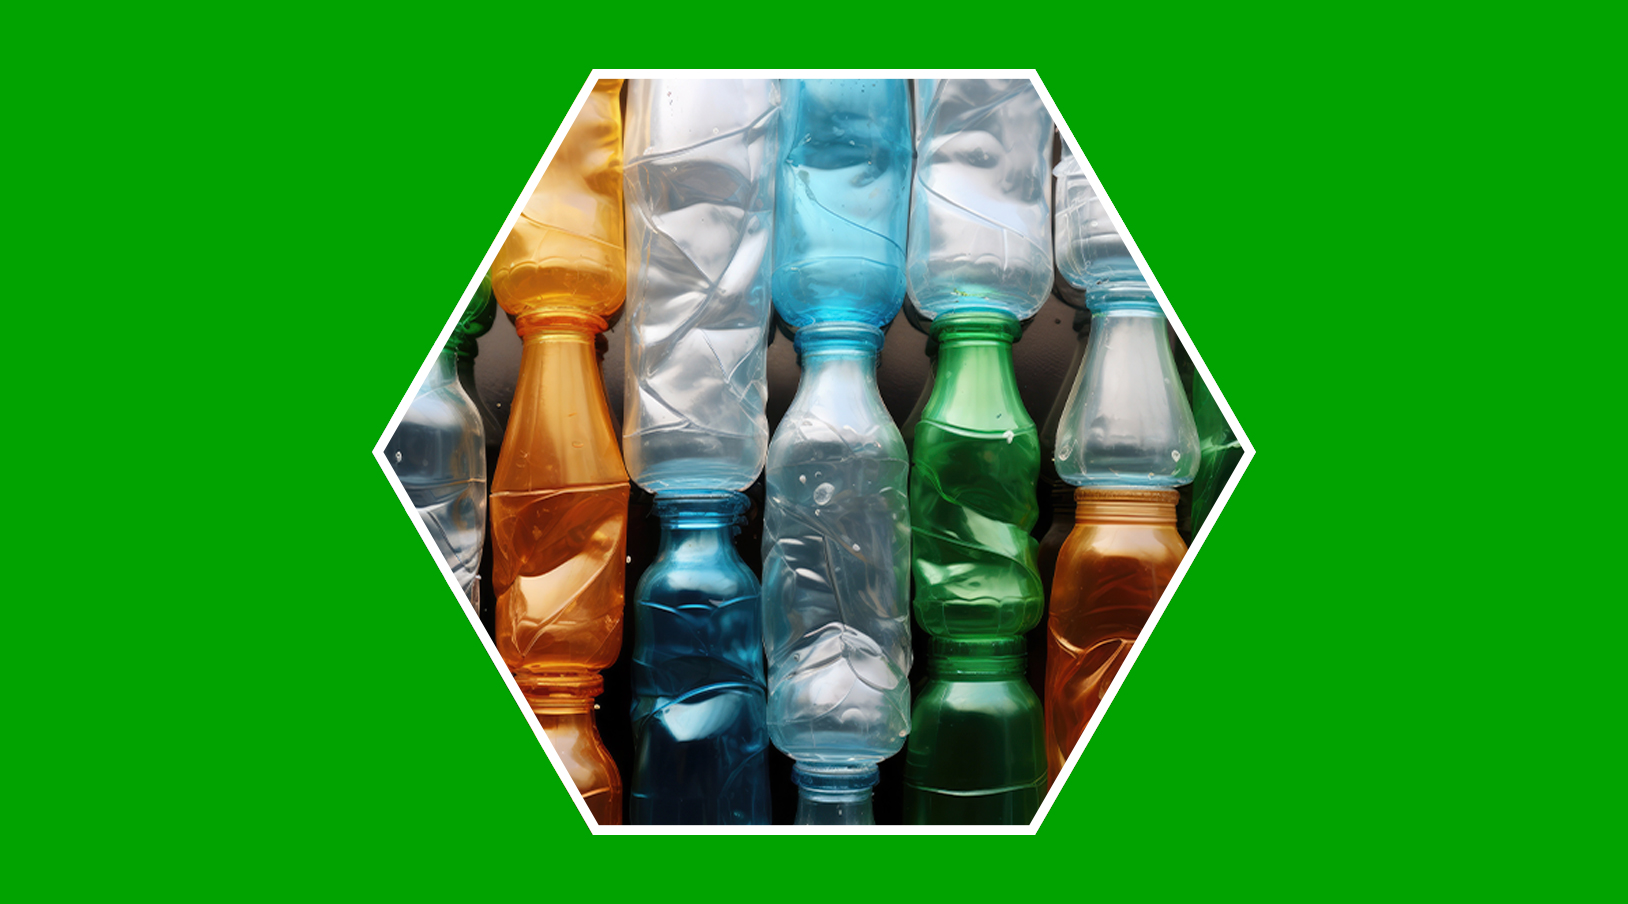 Reducir, reutilizar o reciclar: ¿significan lo mismo?